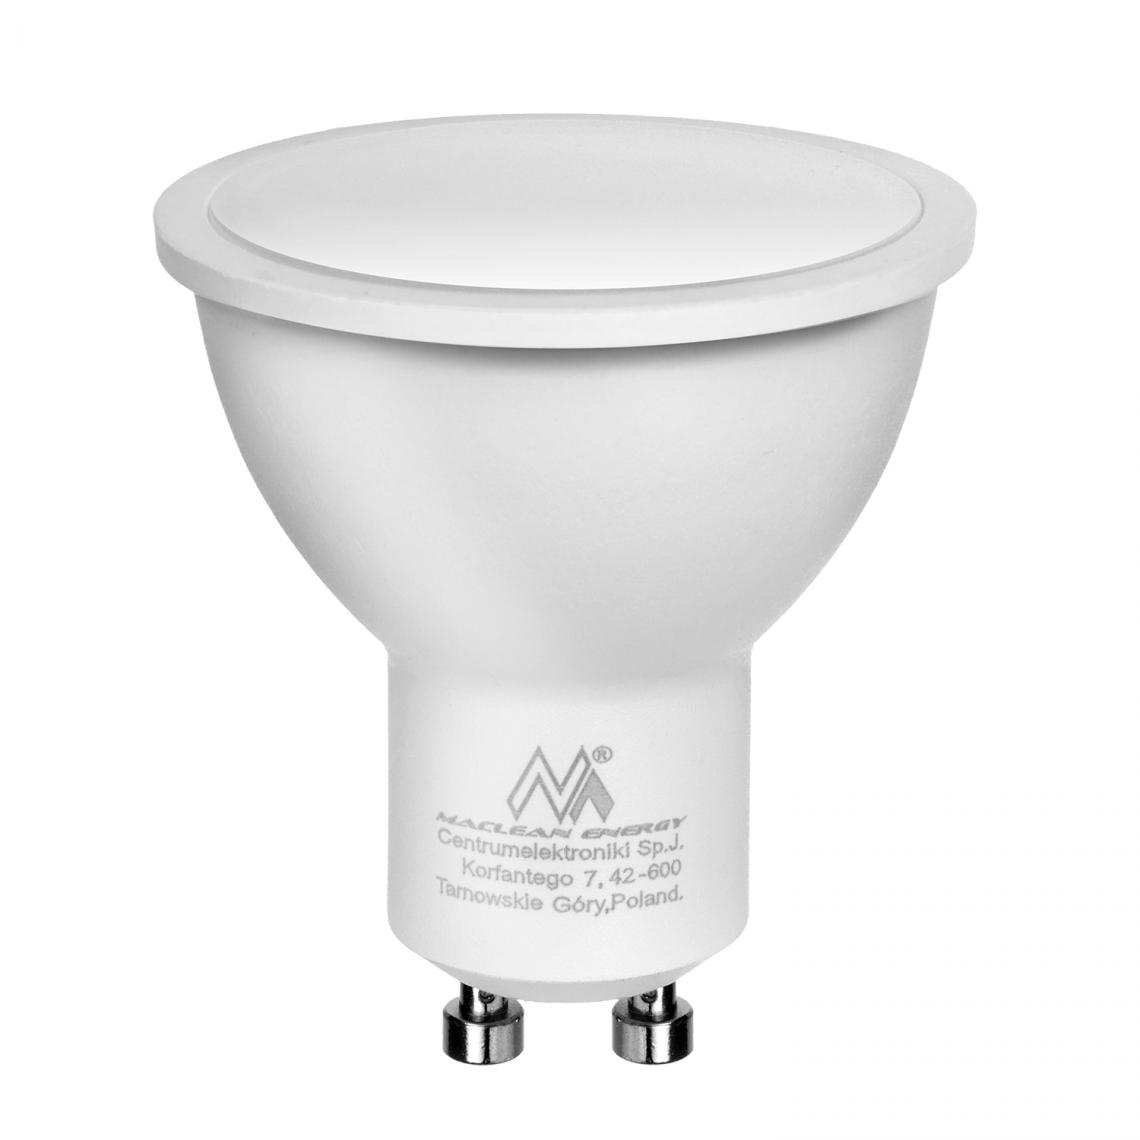 Maclean - Ampoule LED GU10 5W Maclean Energy MCE435 NW blanc neutre 4000K - Ampoules LED